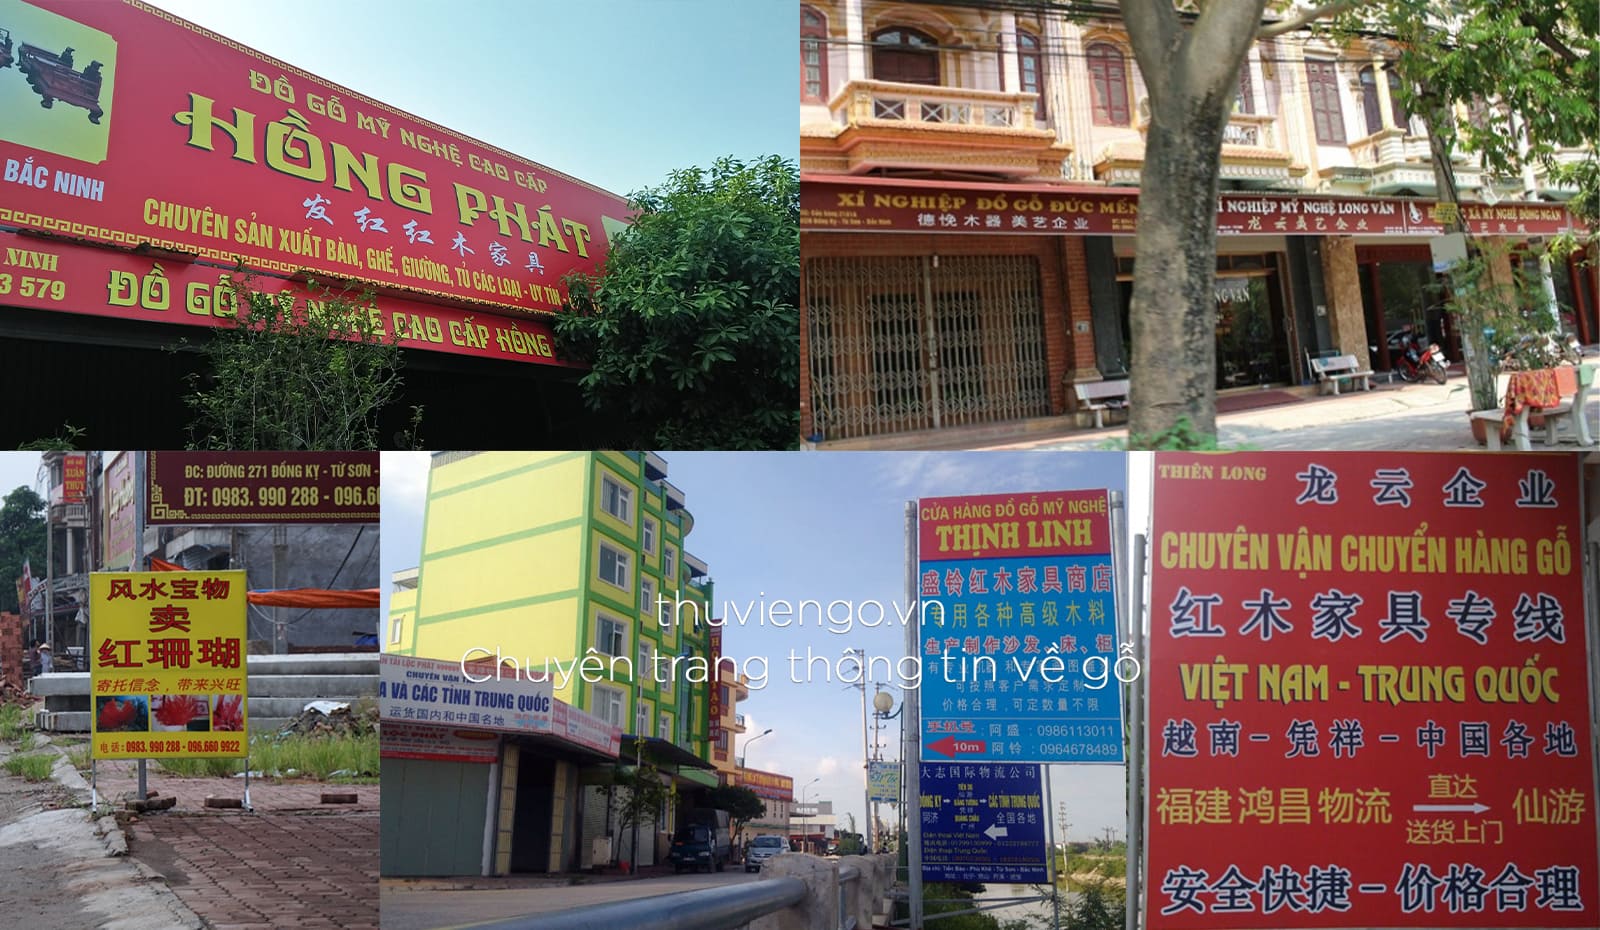 Biển quảng cáo chữ Trung Quốc tại khu vực Đồng Kỵ, Từ Sơn, Bắc Ninh